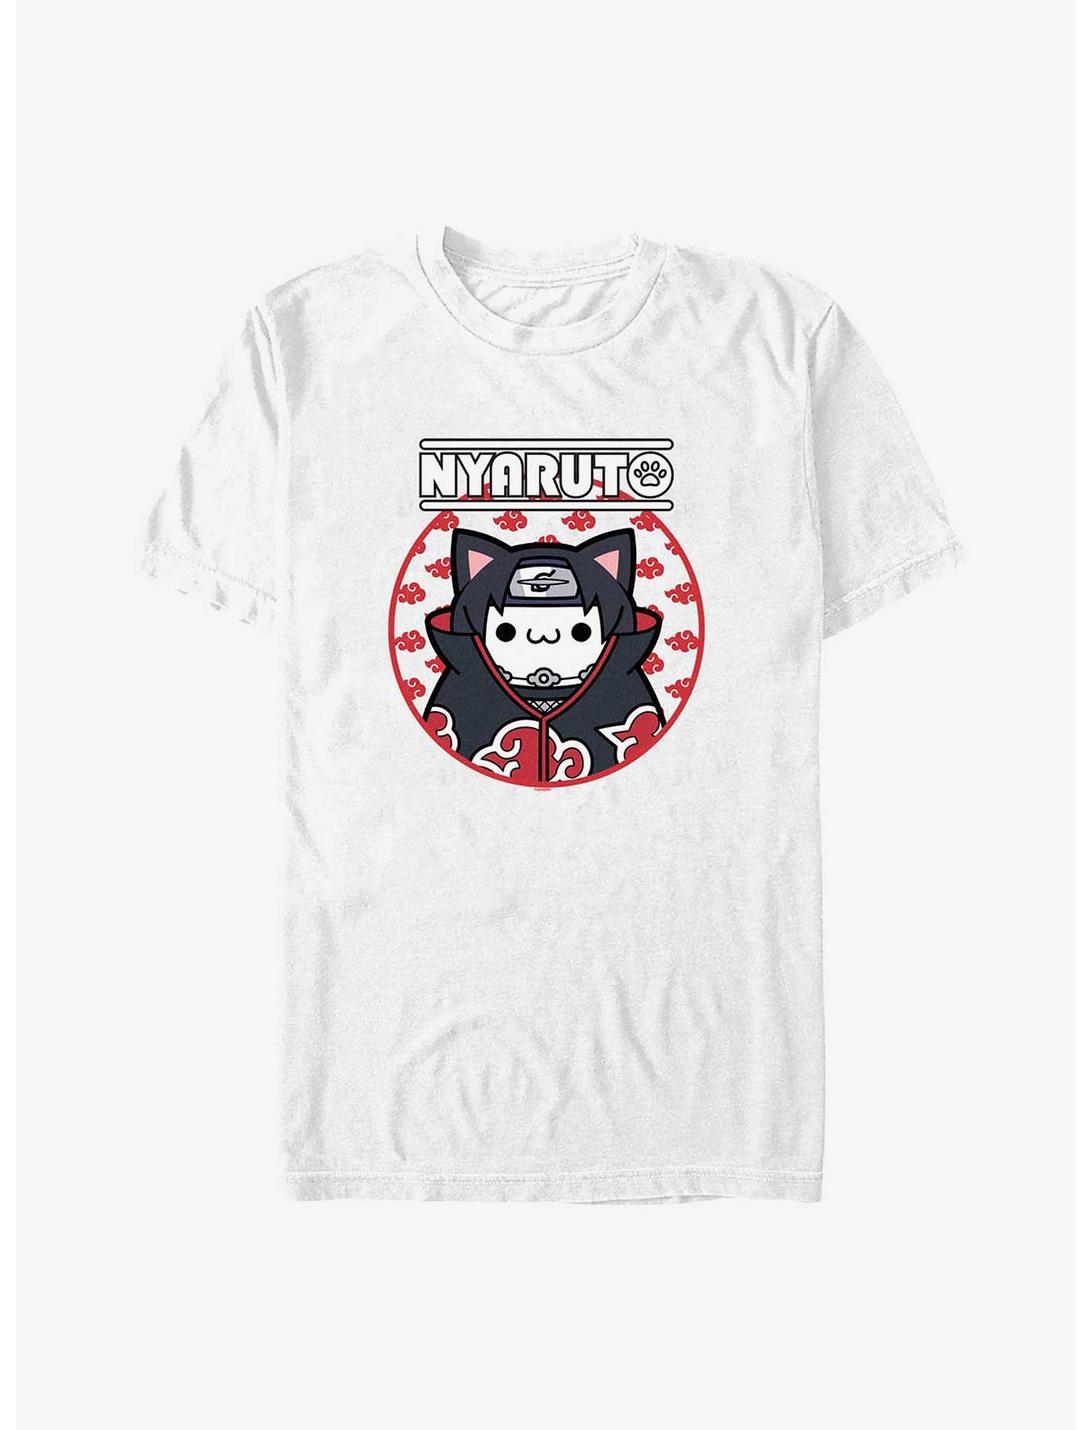 Naruto Nyaruto Itachi Cat T-Shirt, WHITE, hi-res